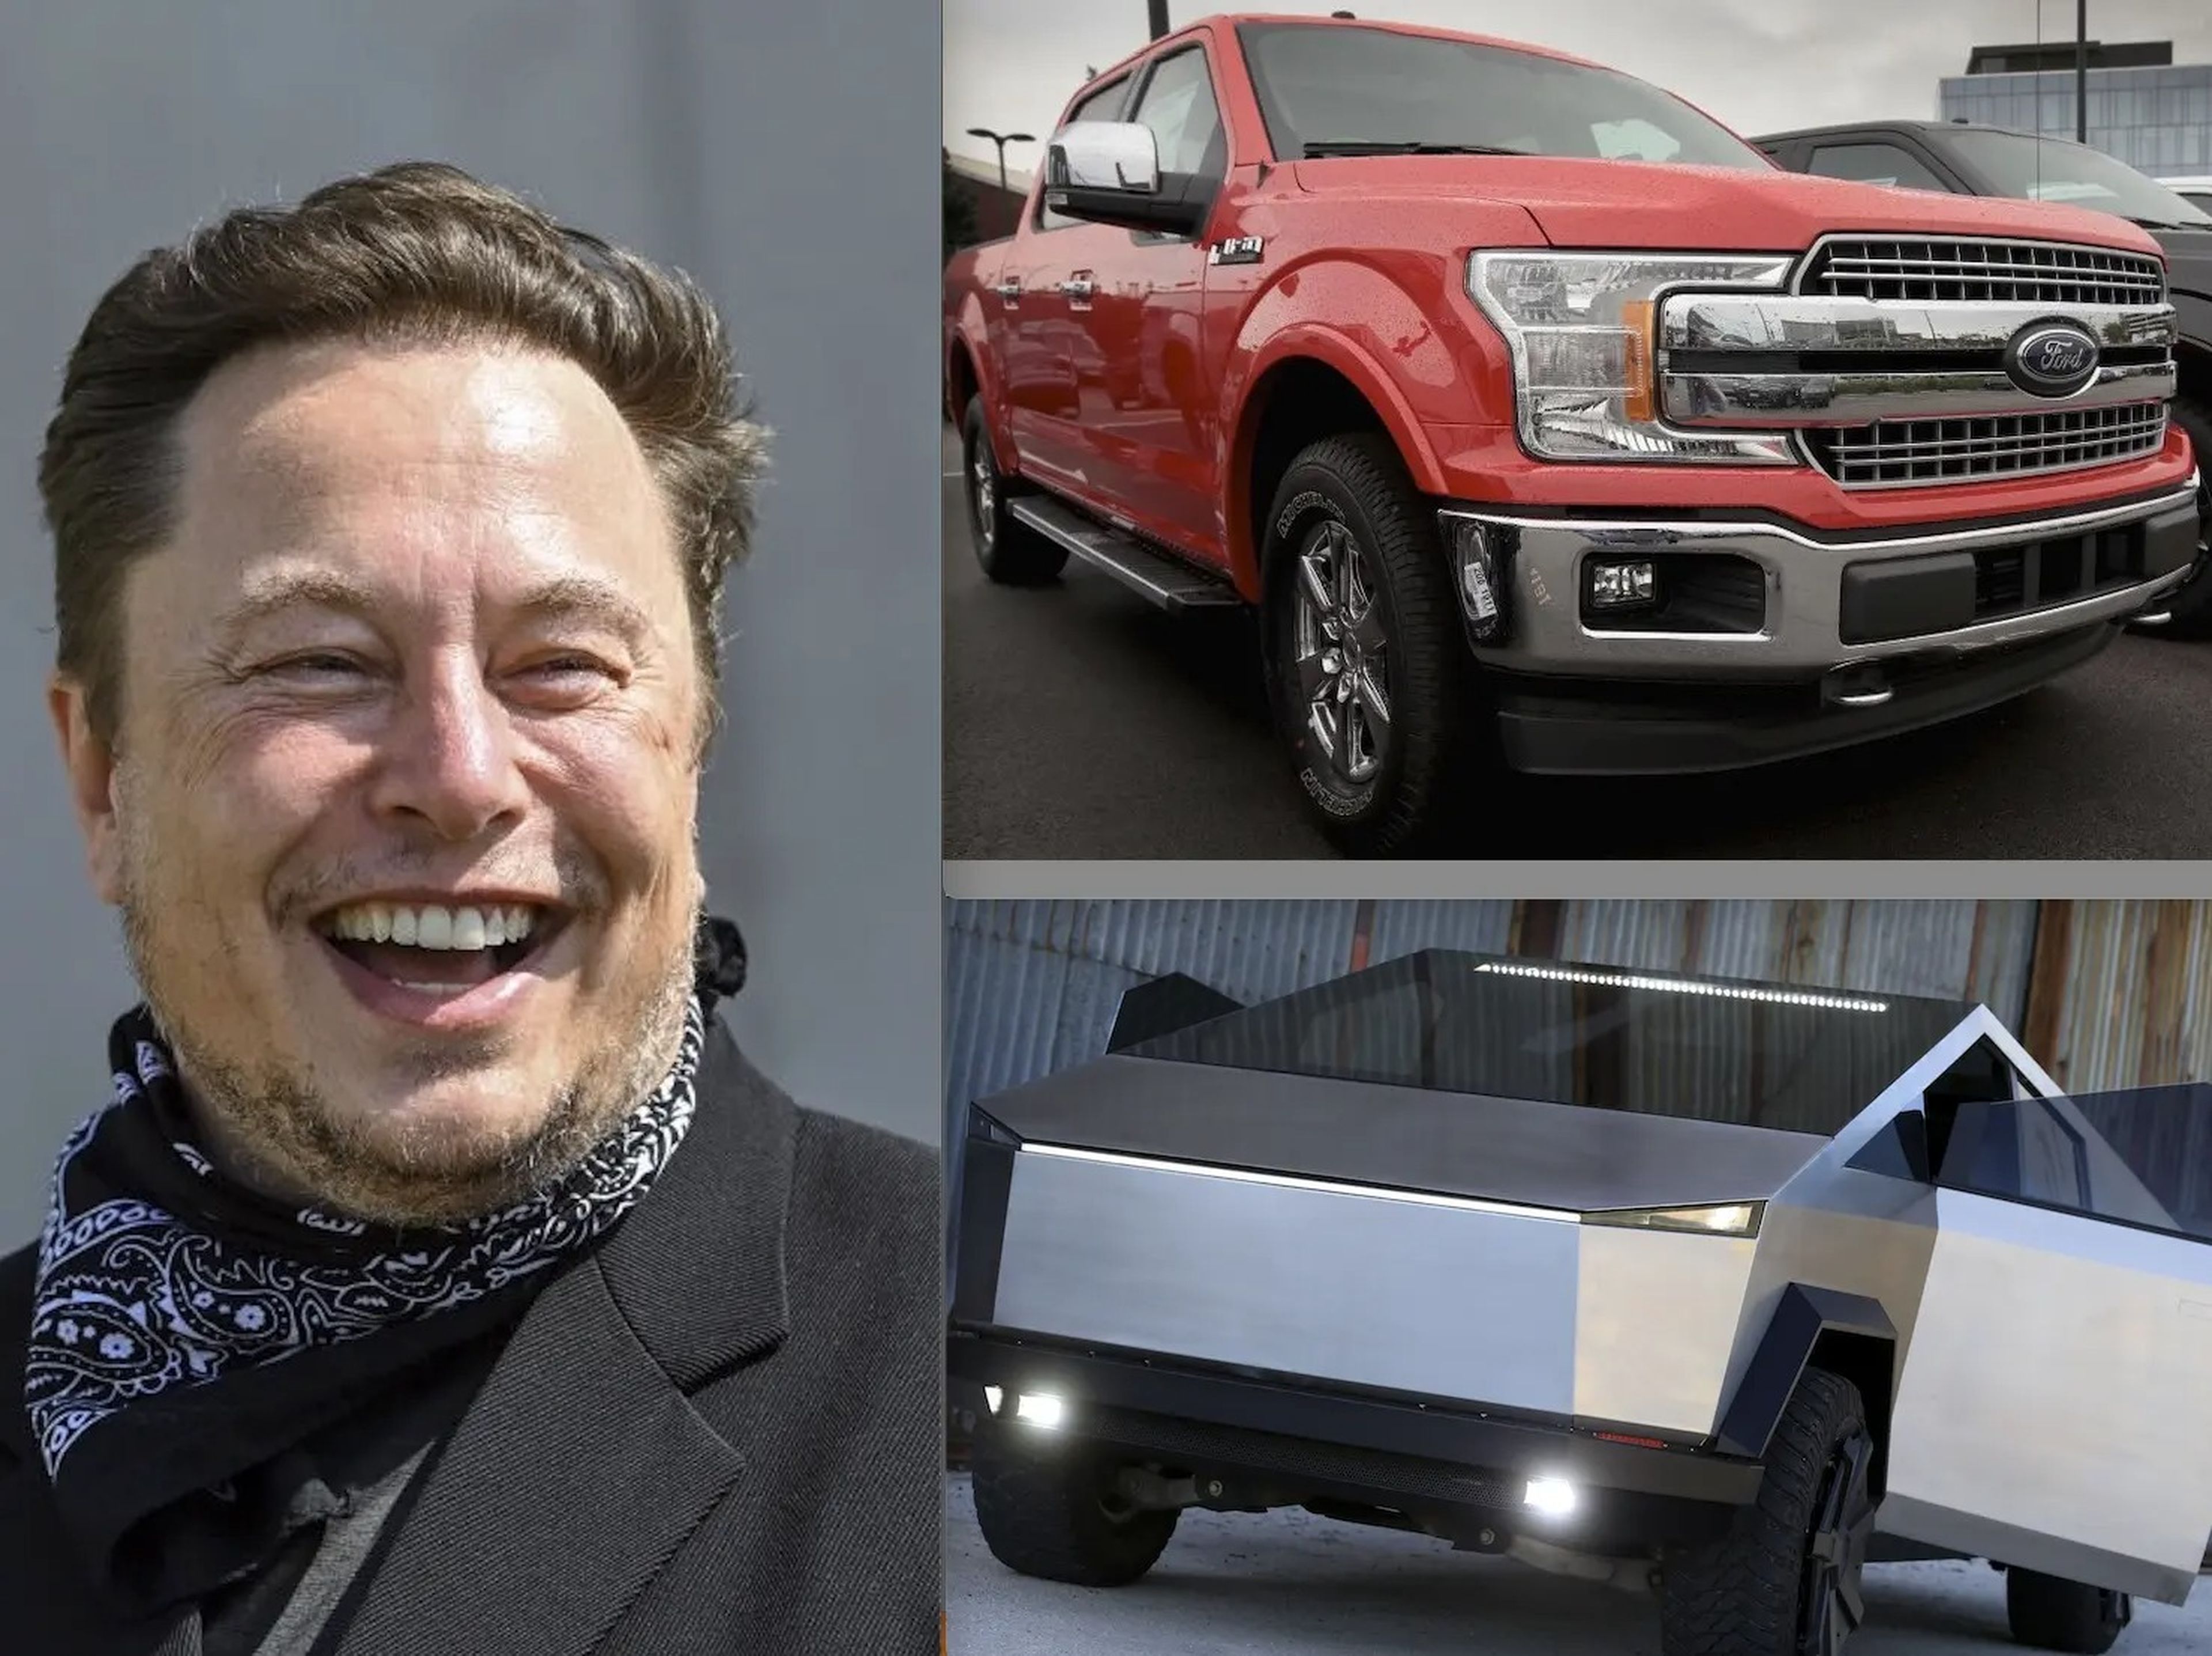 Elon Musk quería crear el Cybertruck porque pensaba que las camionetas de Ford eran "aburridos", según Walter Isaacson.